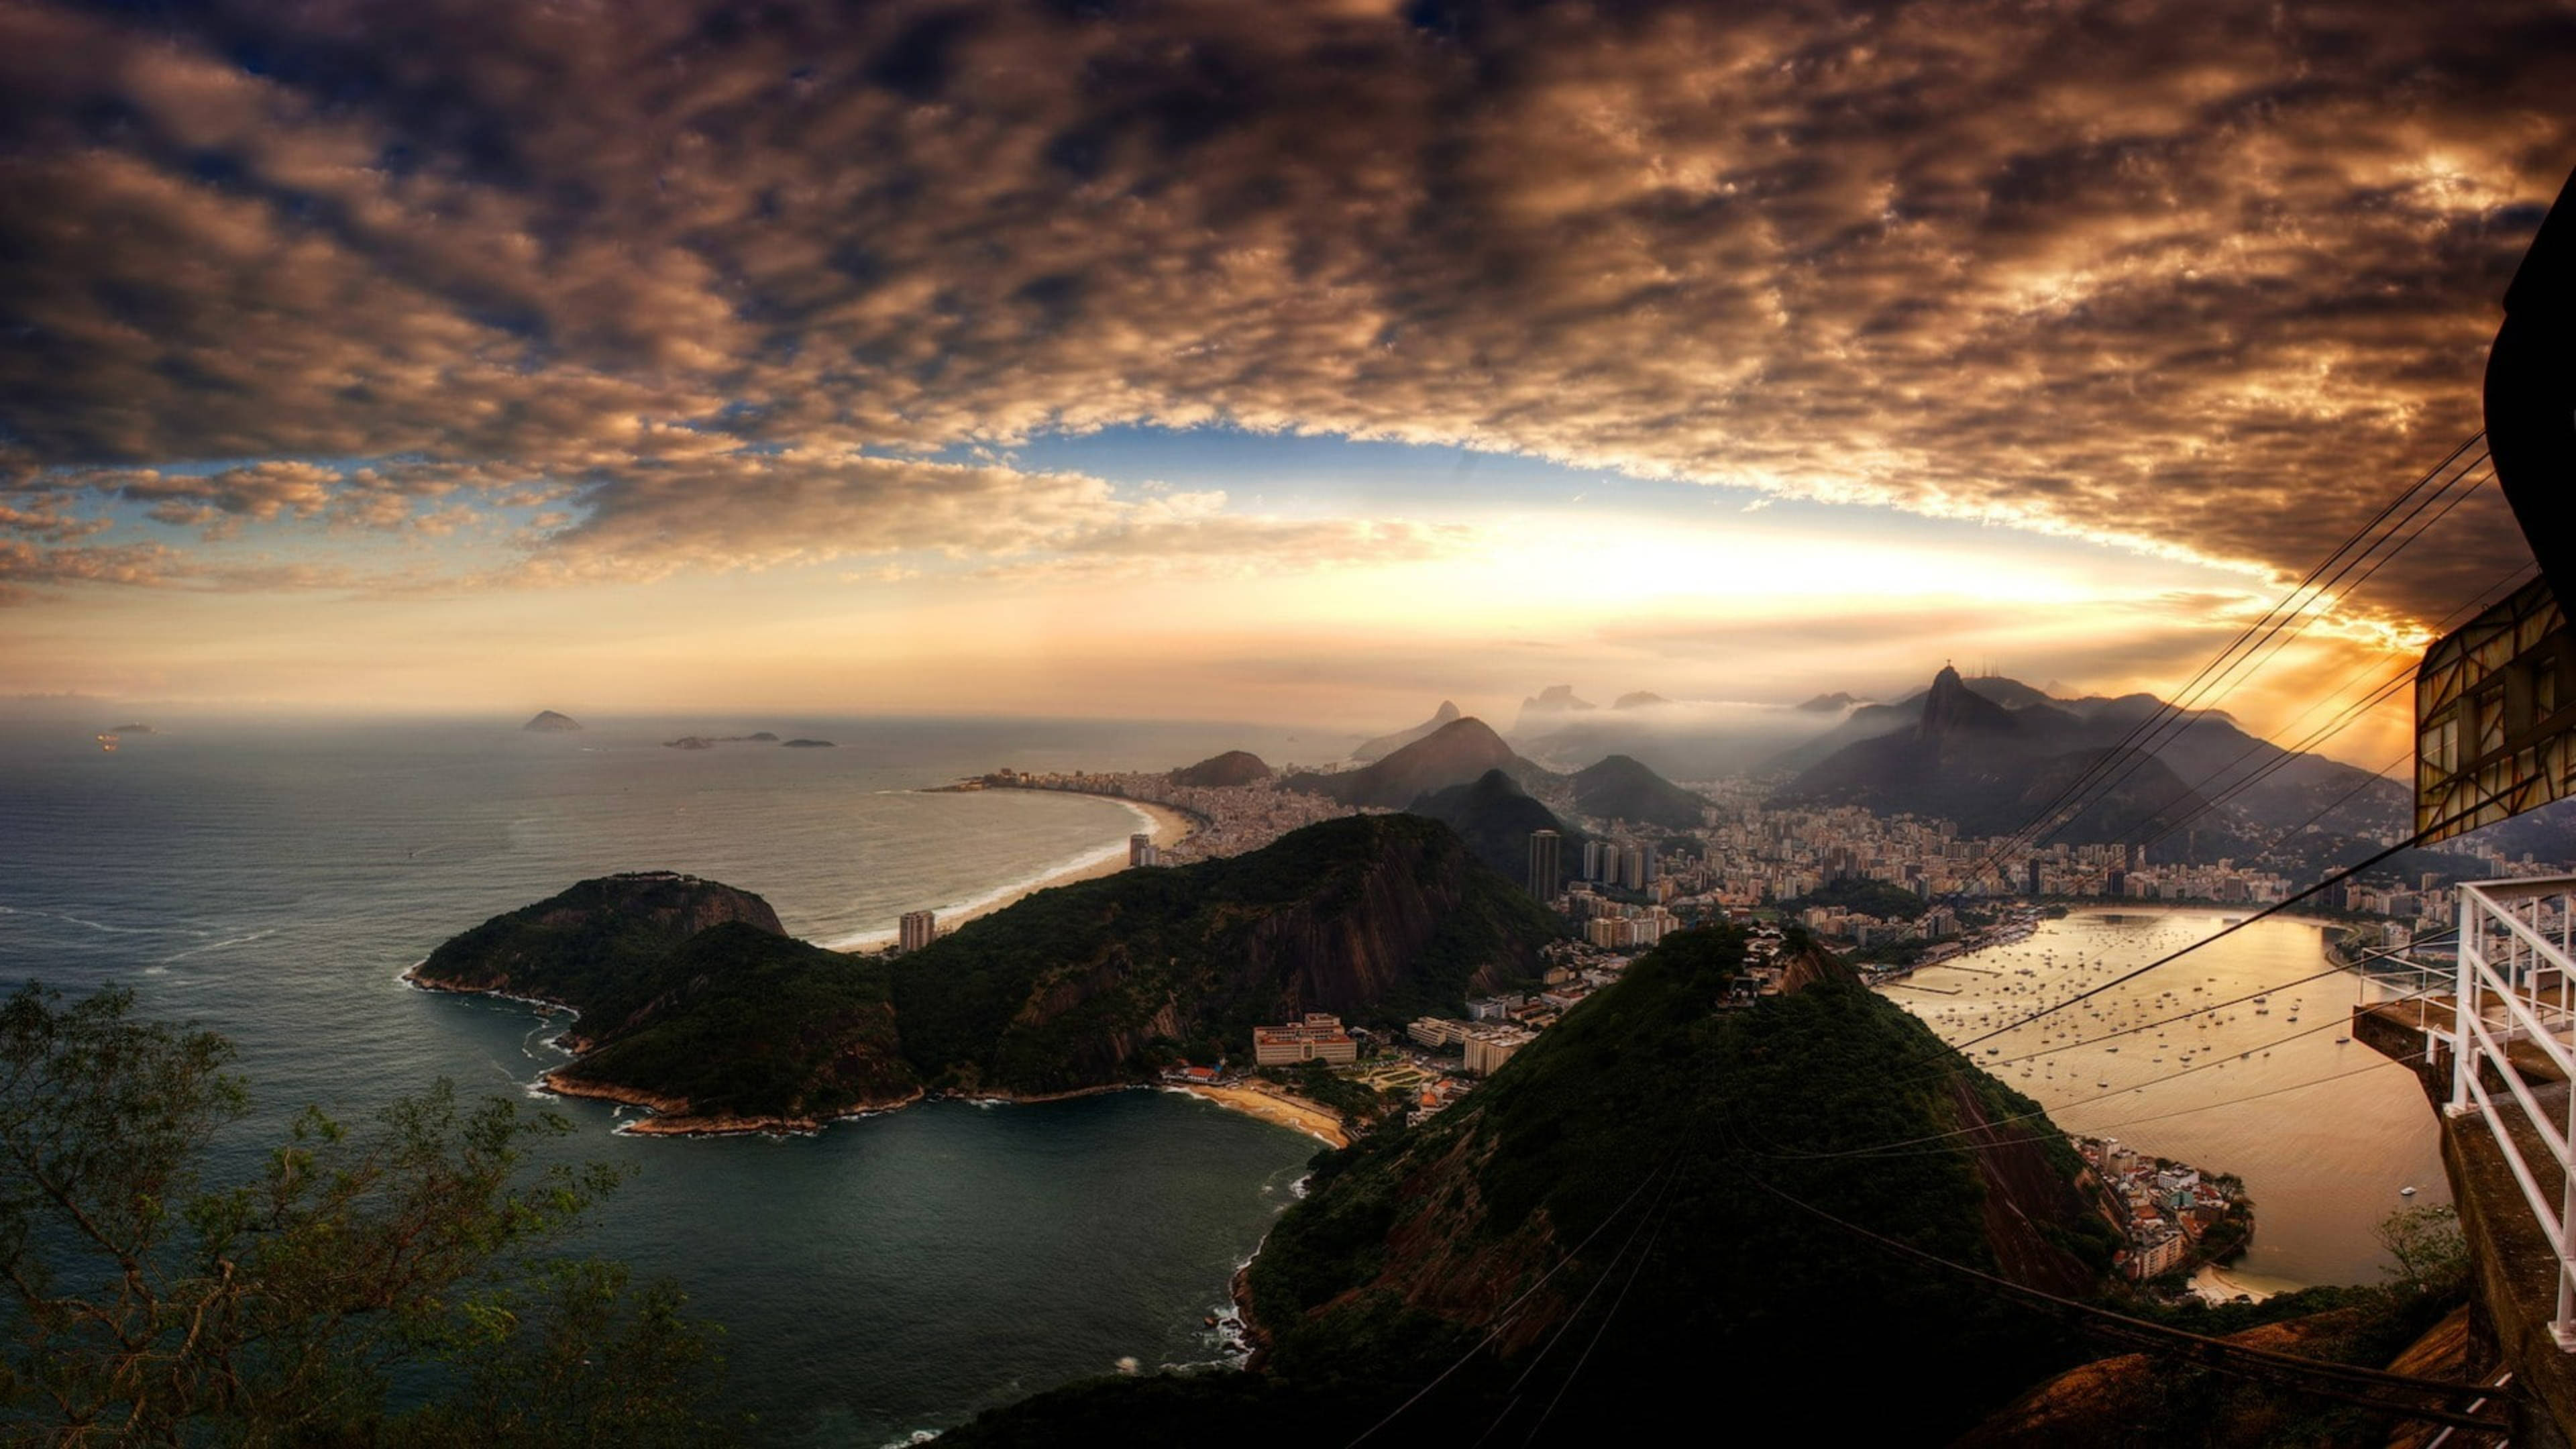 Обои стола 1366. Пейзажи Рио де Жанейро. Бразилия Рио де Жанейро. Бразилия Рио де Жанейро море. Вид на Рио де Жанейро с горы.